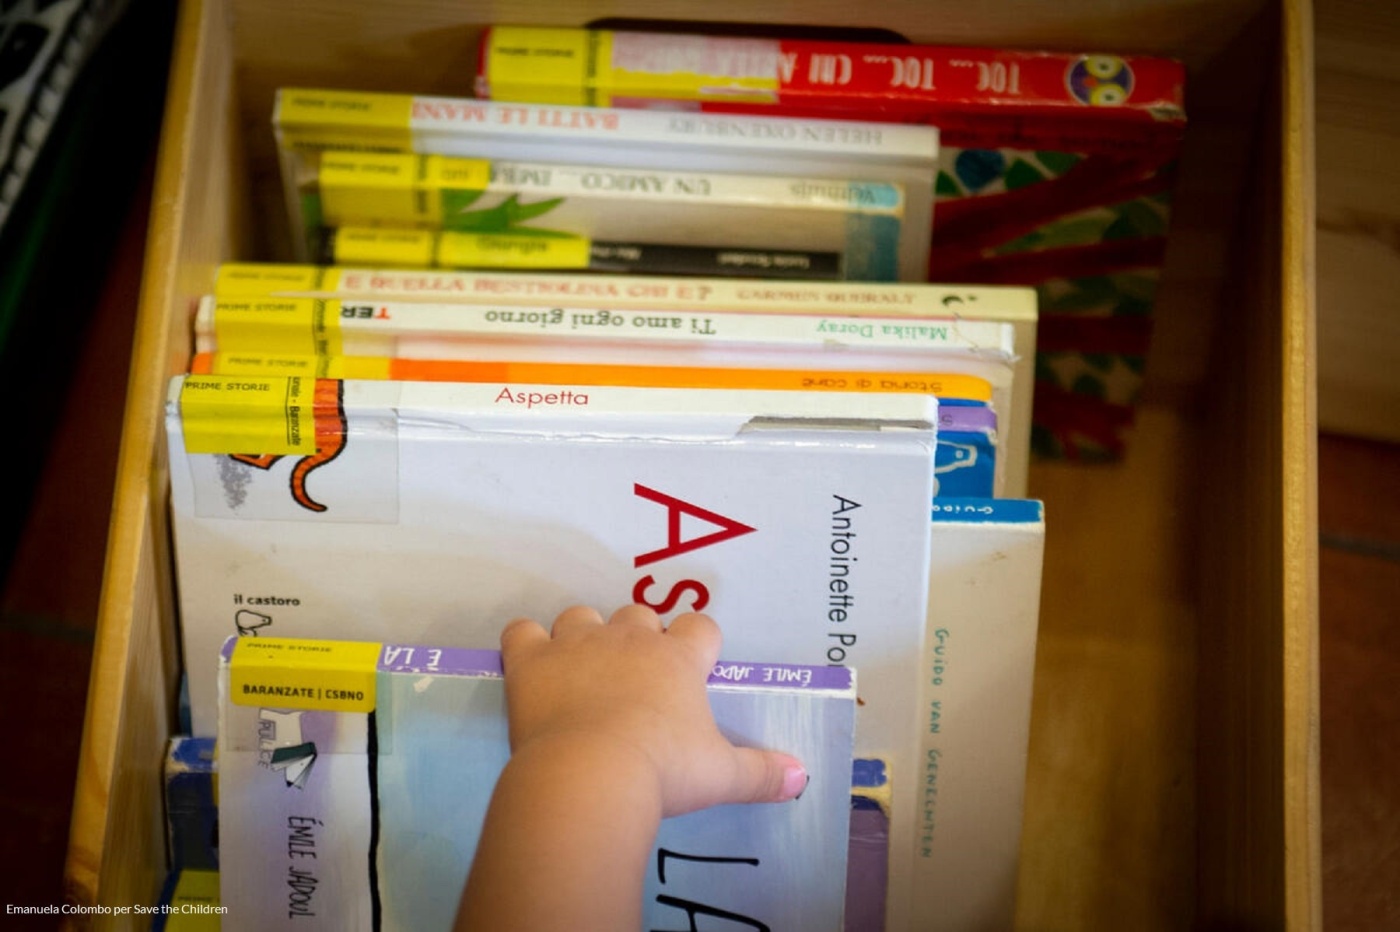 Libri per bambini 0-3 anni. L'importanza della lettura ad alta voce